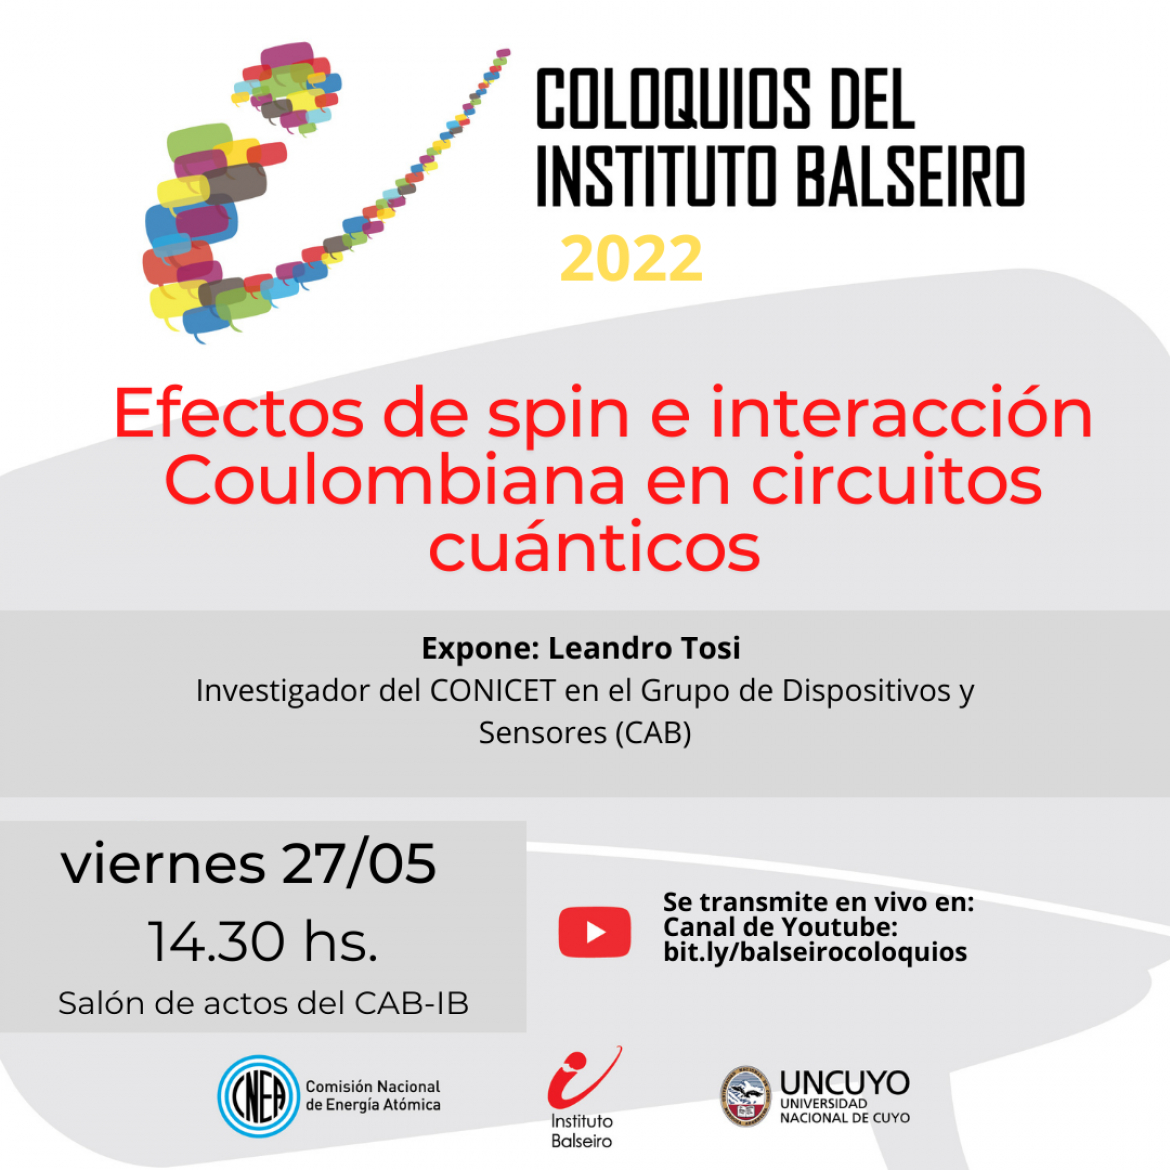 COLOQUIO DEL 27/05: EFECTOS DE SPIN E INTERACCIONES COULOMBIANAS EN CIRCUITOS CUÁNTICOS